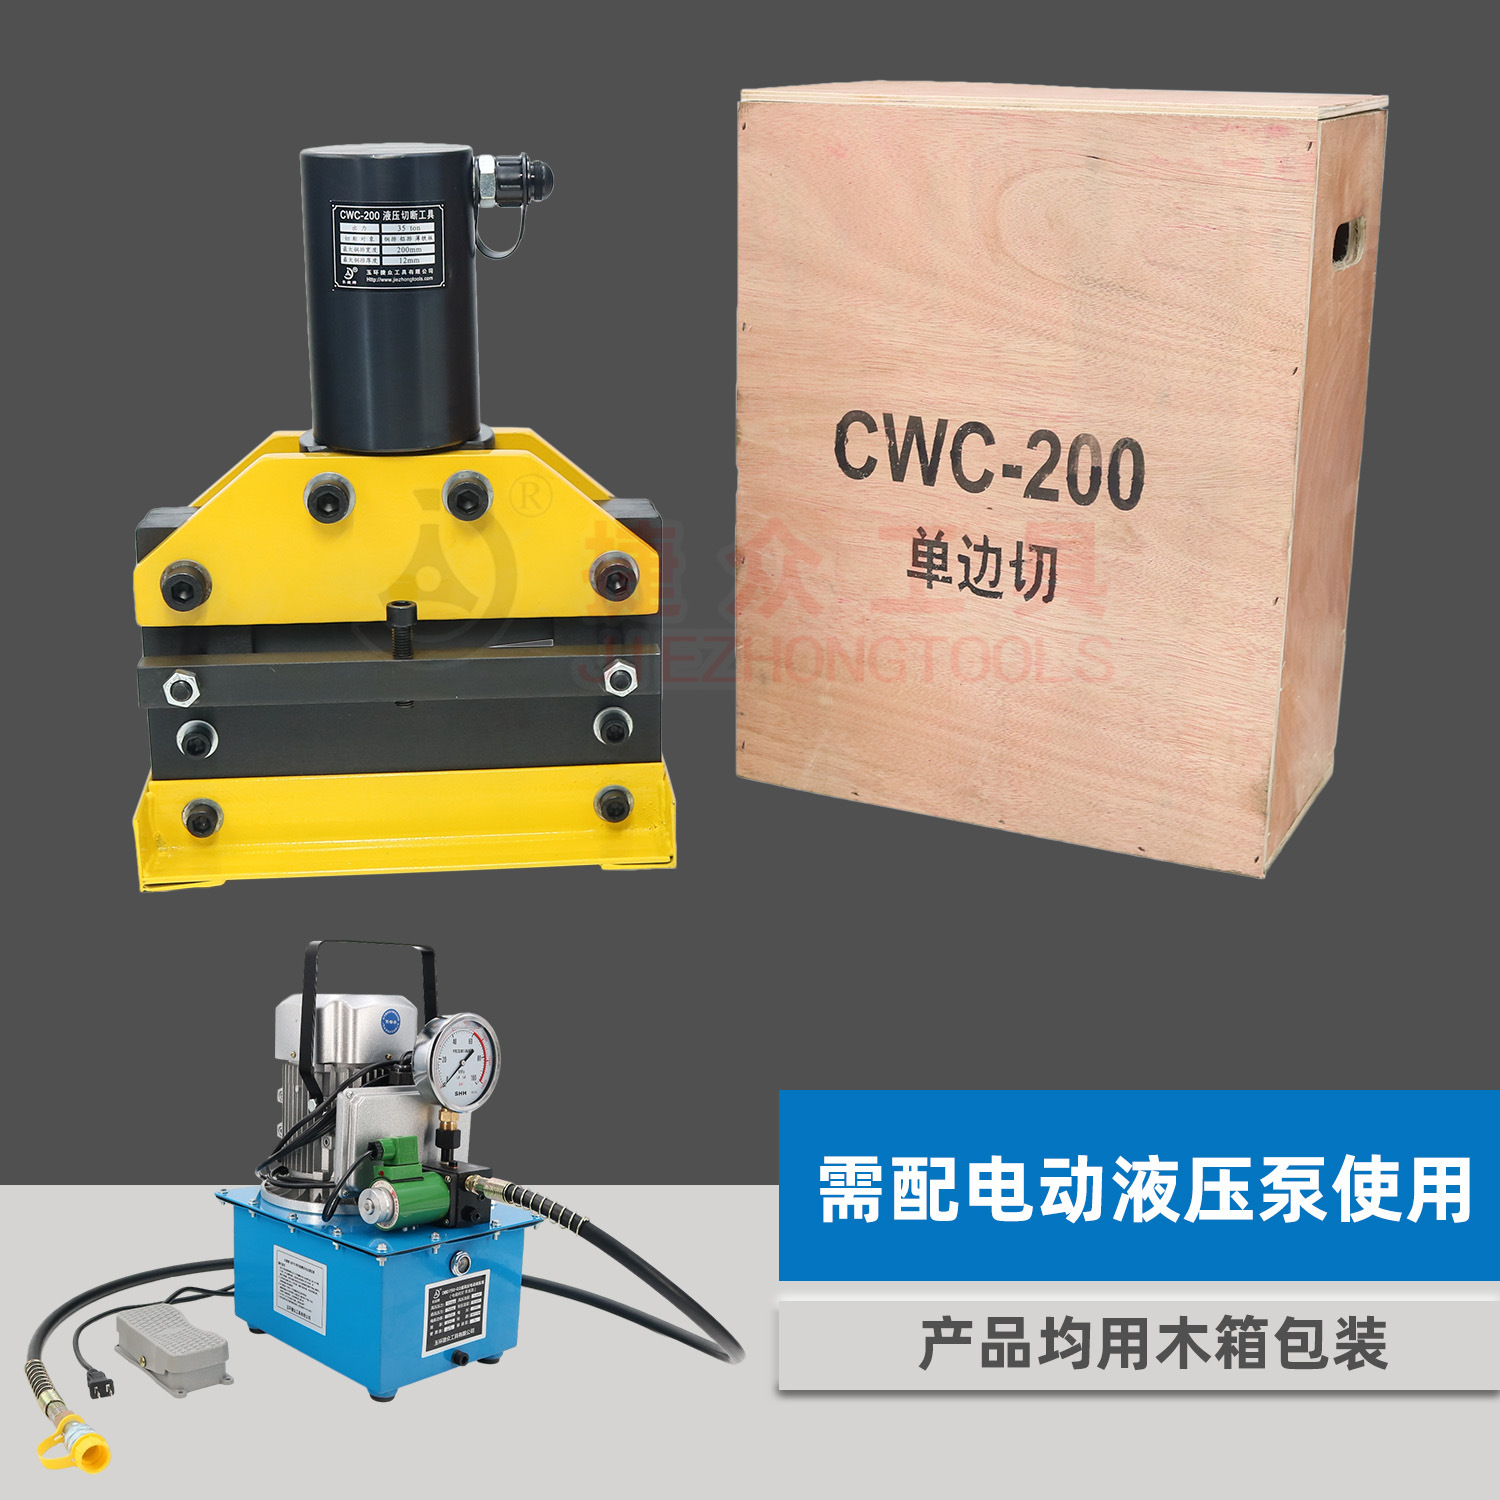 液压切排机CWC-200 出力35吨单边切宽度200mm小型液压切断机 - 图2